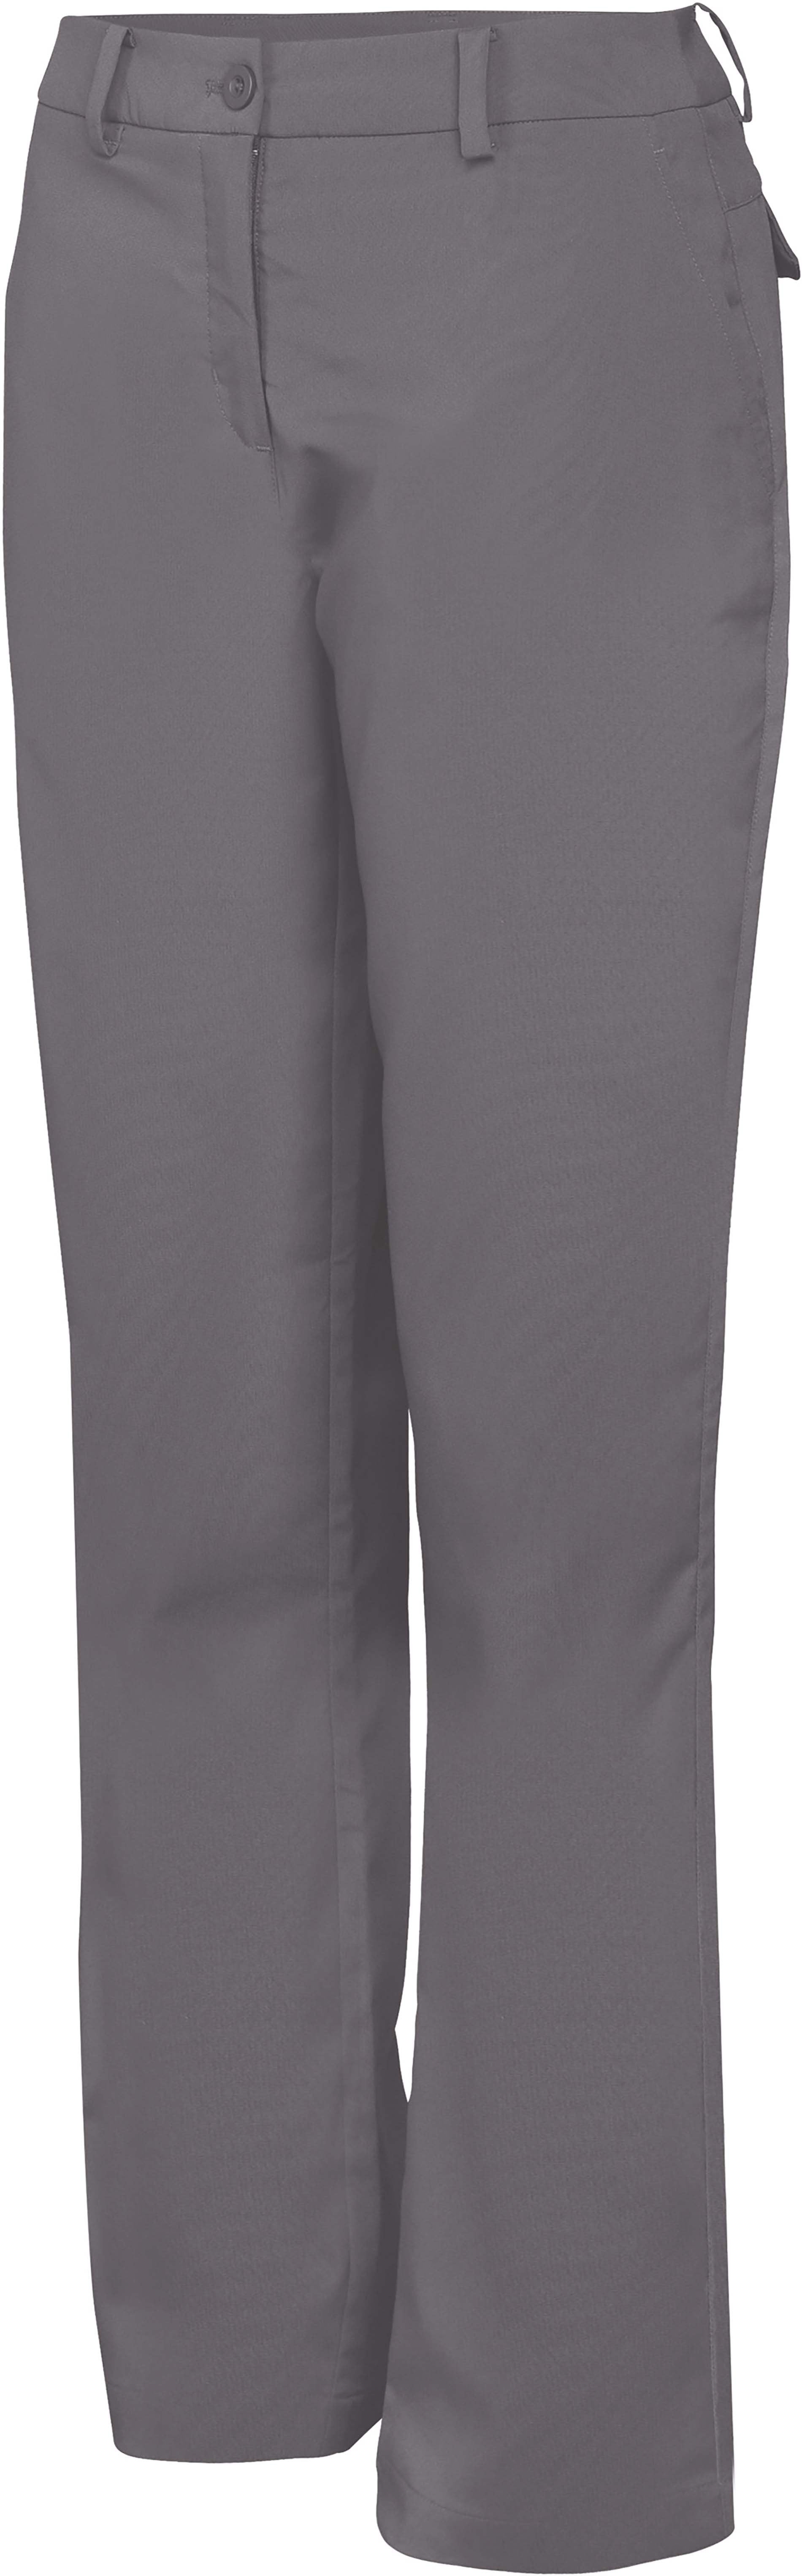 Pantalon technique de golf - PA175 pantalon femme Pro act gris 34 